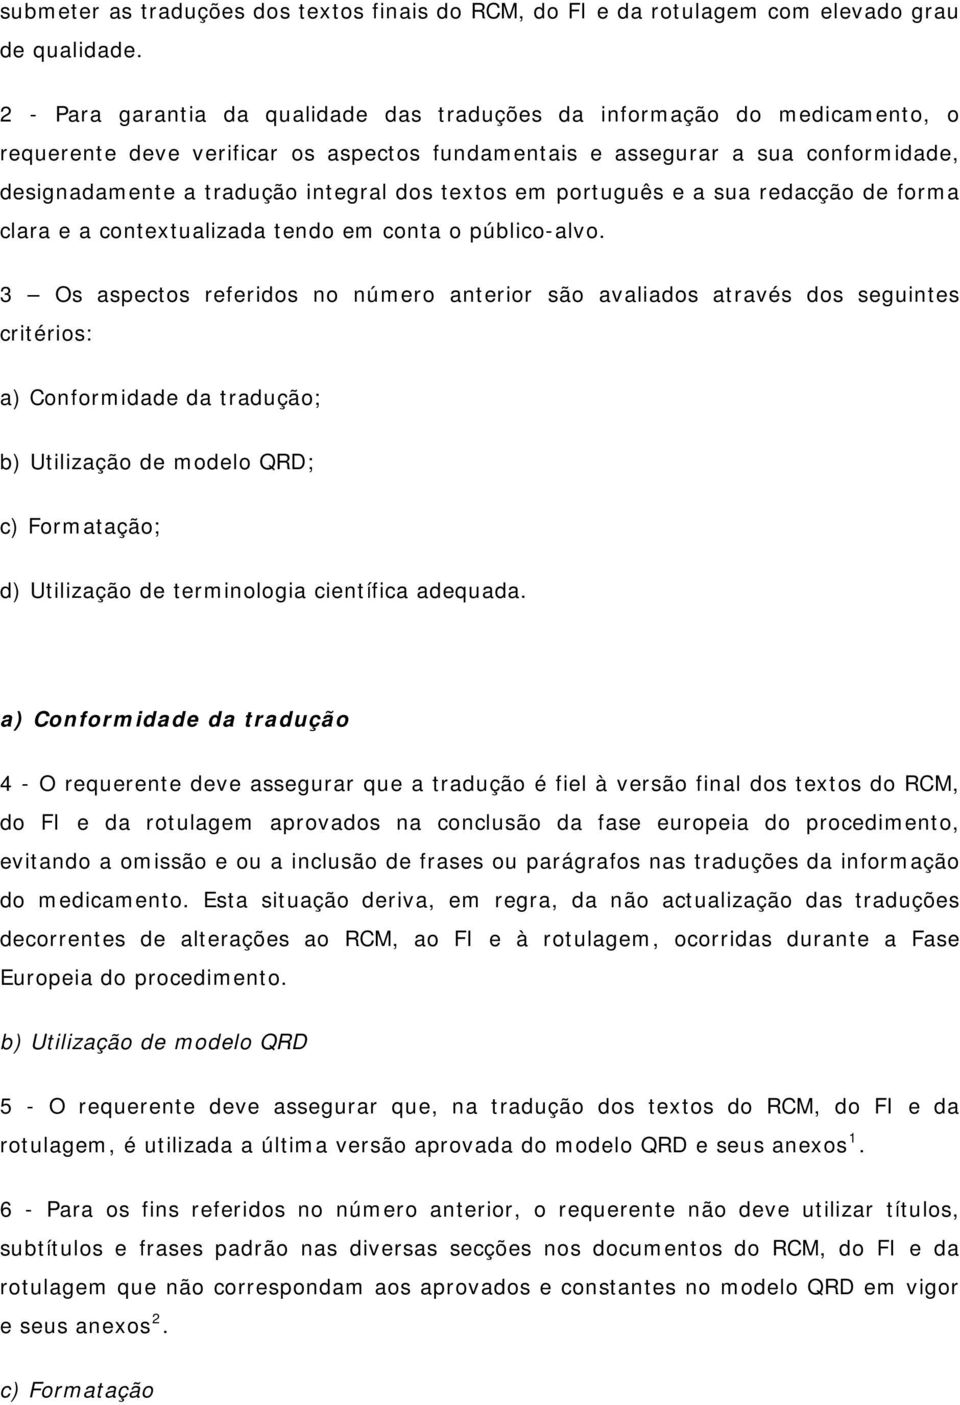 textos em português e a sua redacção de forma clara e a contextualizada tendo em conta o público-alvo.